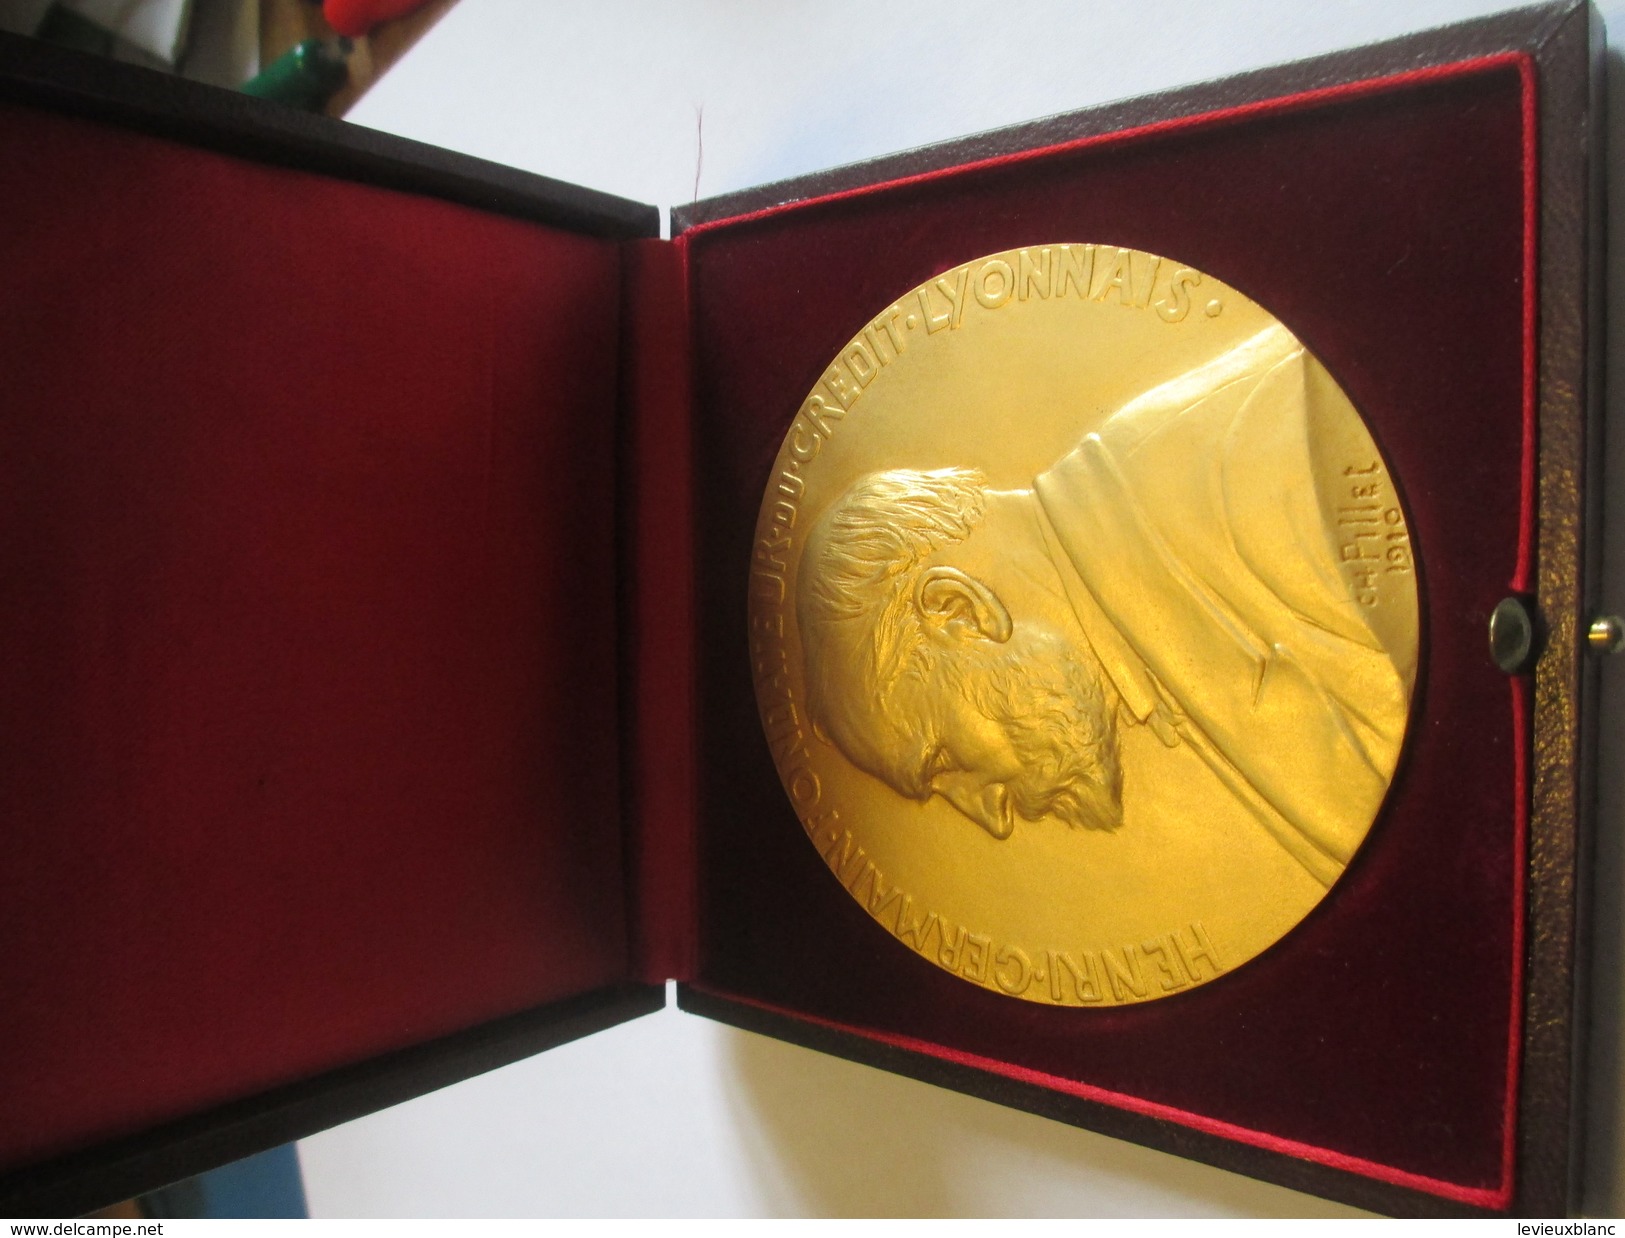 Médaille De Table/ Henri Germain Fondateur  Crédit Lyonnais/25 Années De Service/Pierre Dirson/Pillet/ Vers1970   MED149 - Francia